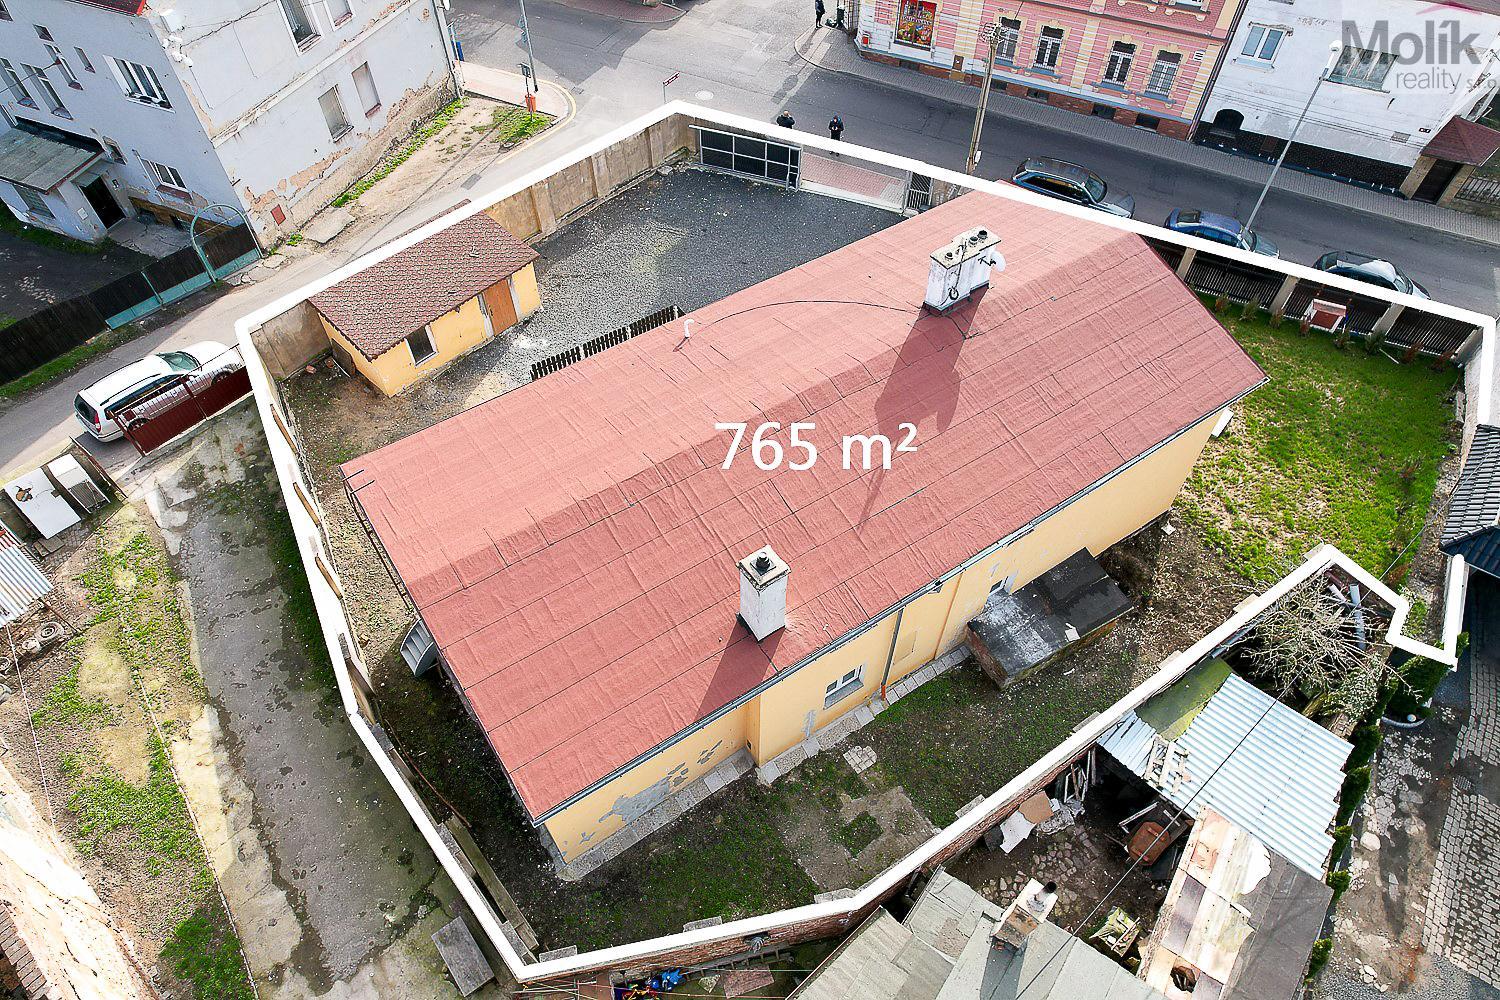 Rodinný dům se dvěma bytovými jednotkami 4+1 a 3+kk (255 m2) Dubí - Pozorka, ul. Střední 13/4., obrázek č. 2